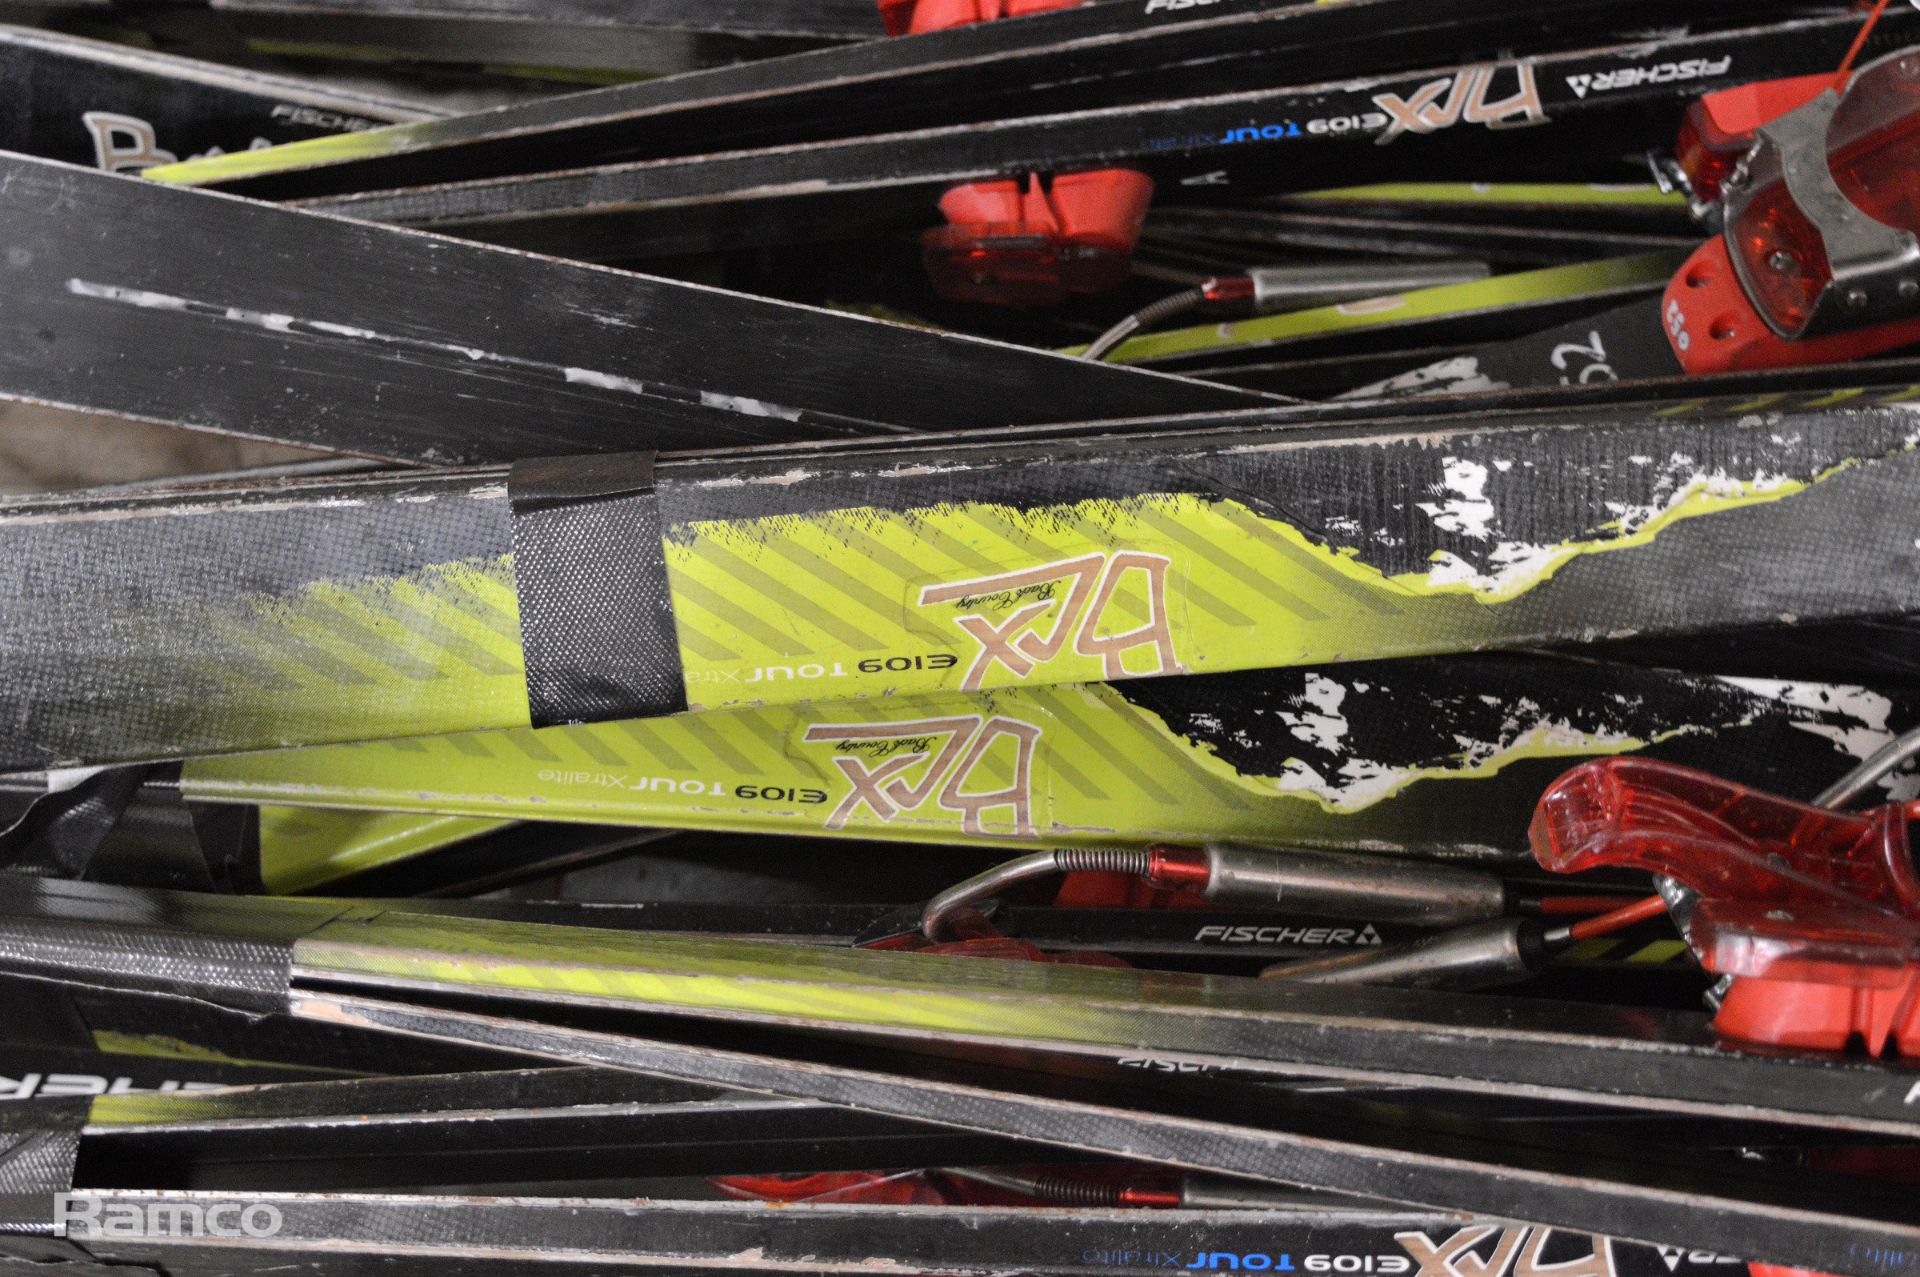 Fischer E 109 Tour Xtralito Skis Set - 25 pairs - Image 4 of 4